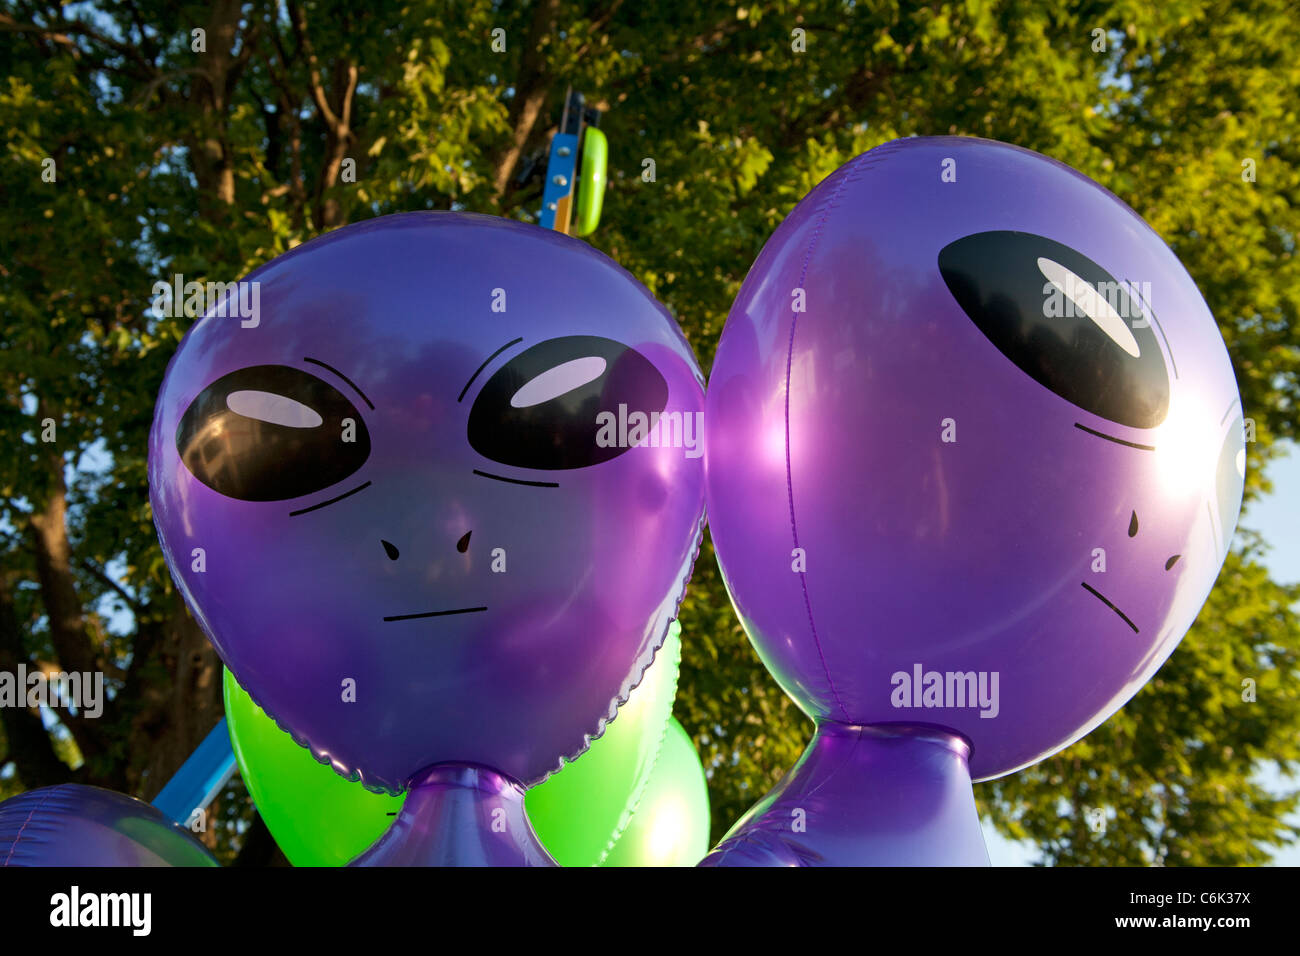 Alien globos inflables Fotografía de stock - Alamy